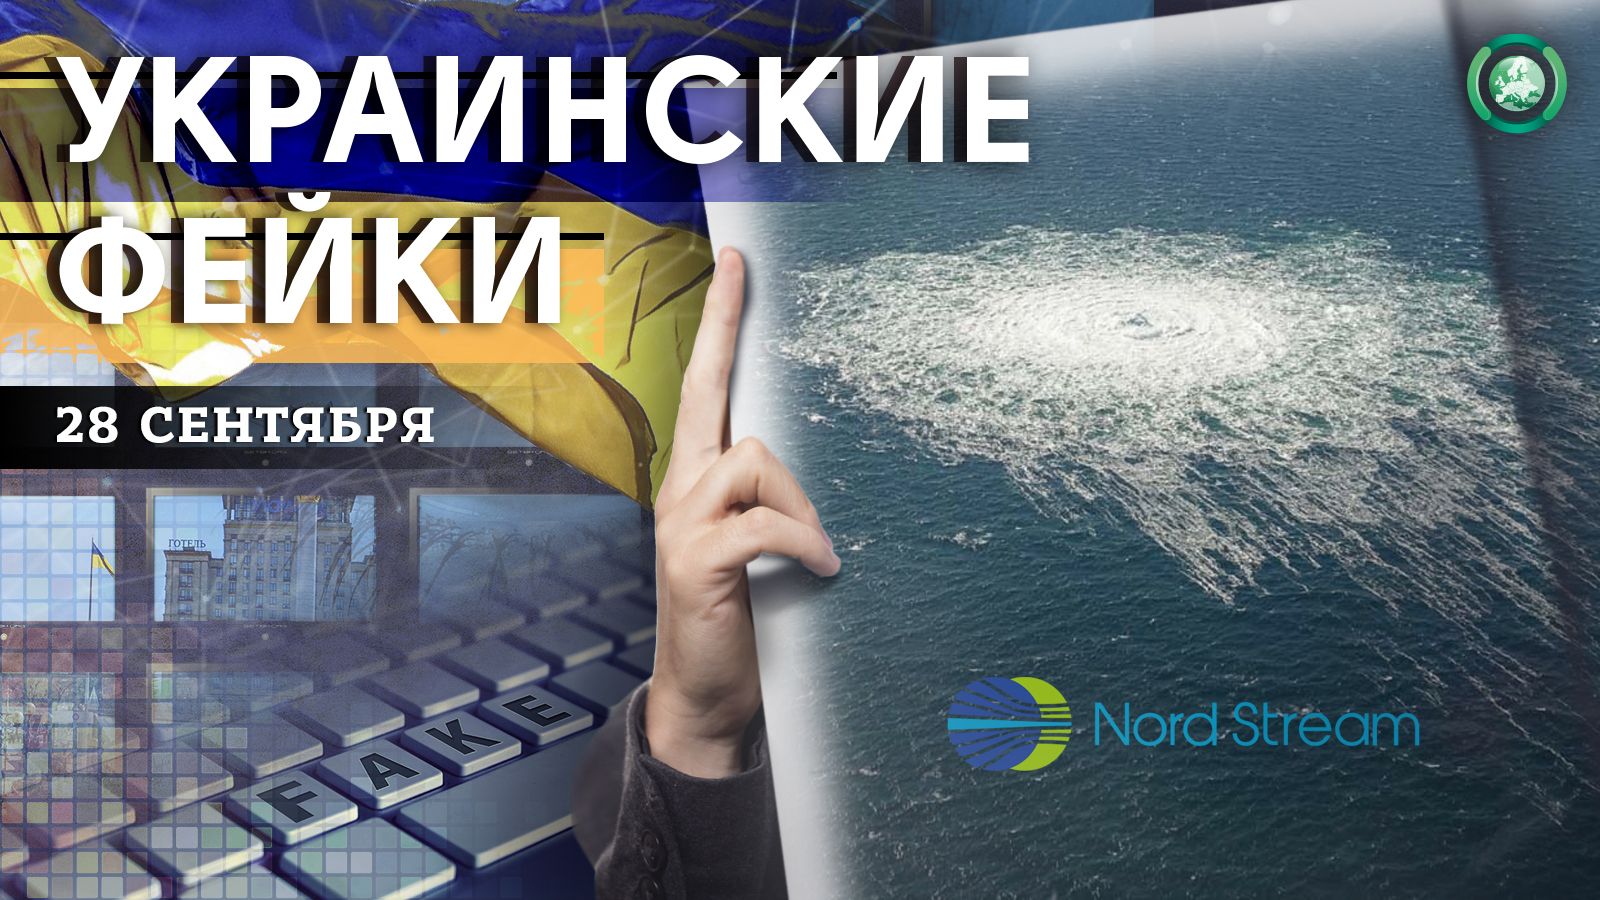 Авария на «Северном потоке» и повестки в соцсетях — какие фейки распространили на Украине 28 сентября Весь мир